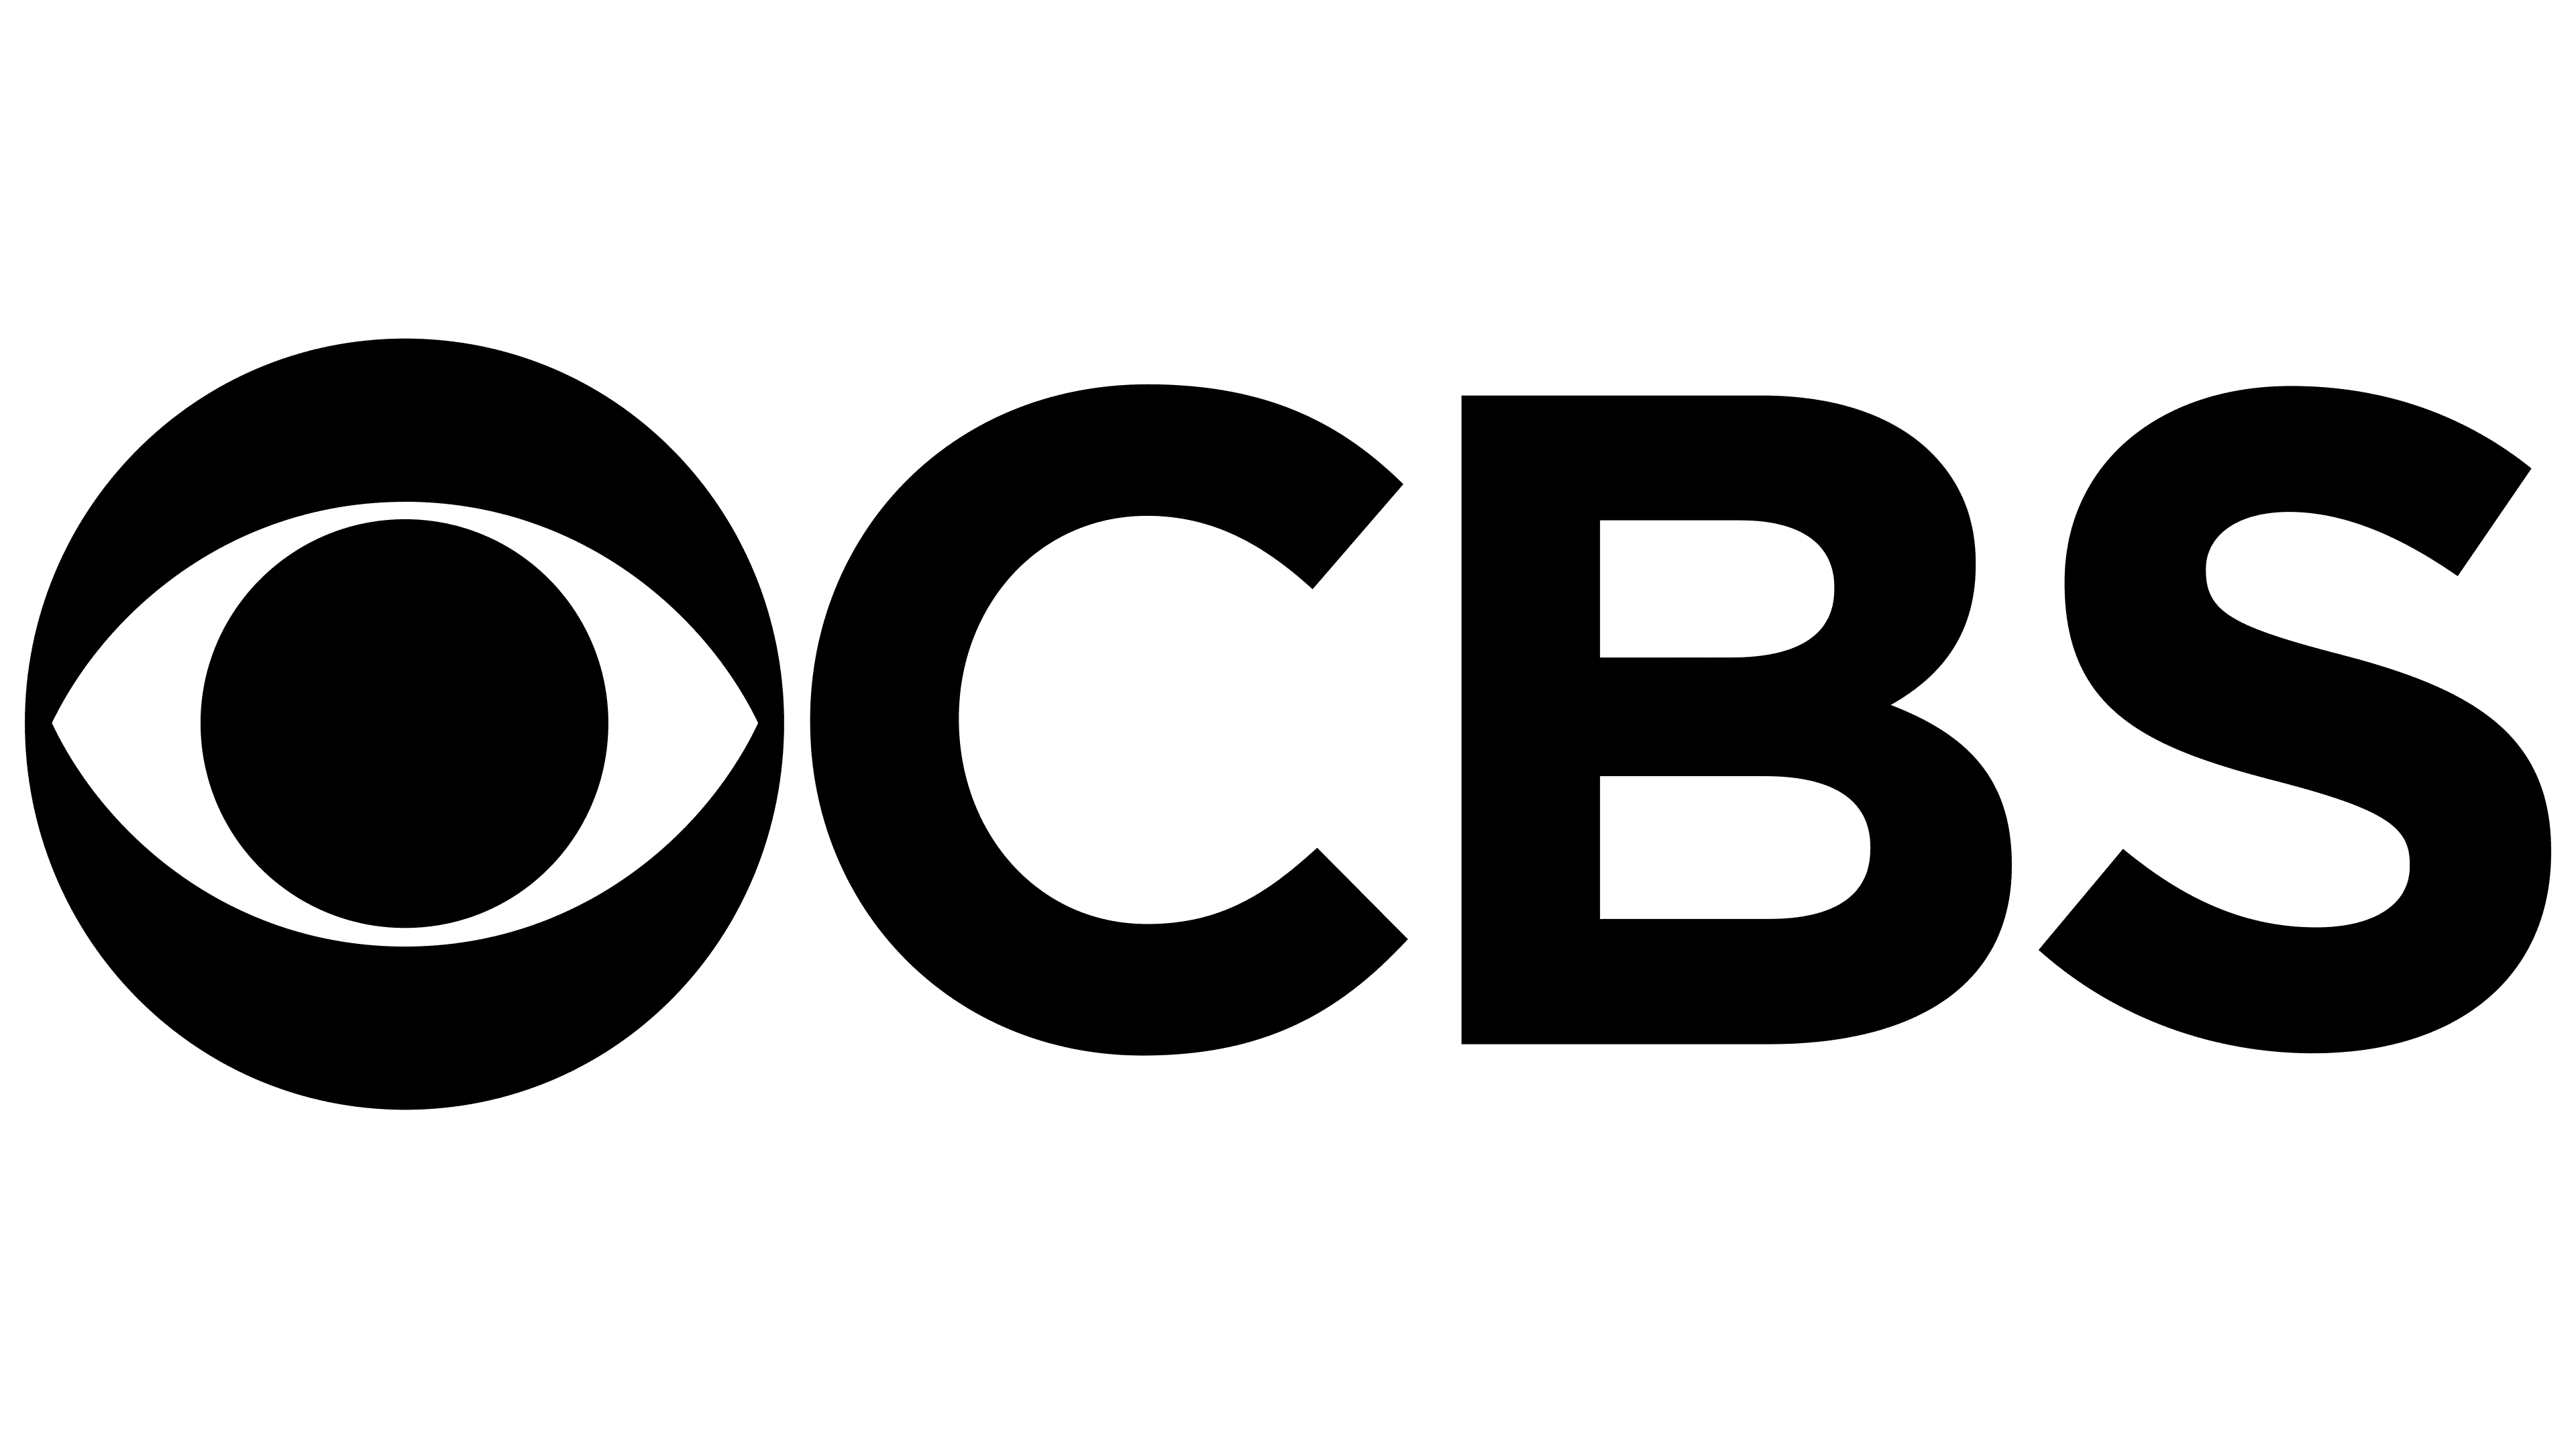 Cbs Logo History